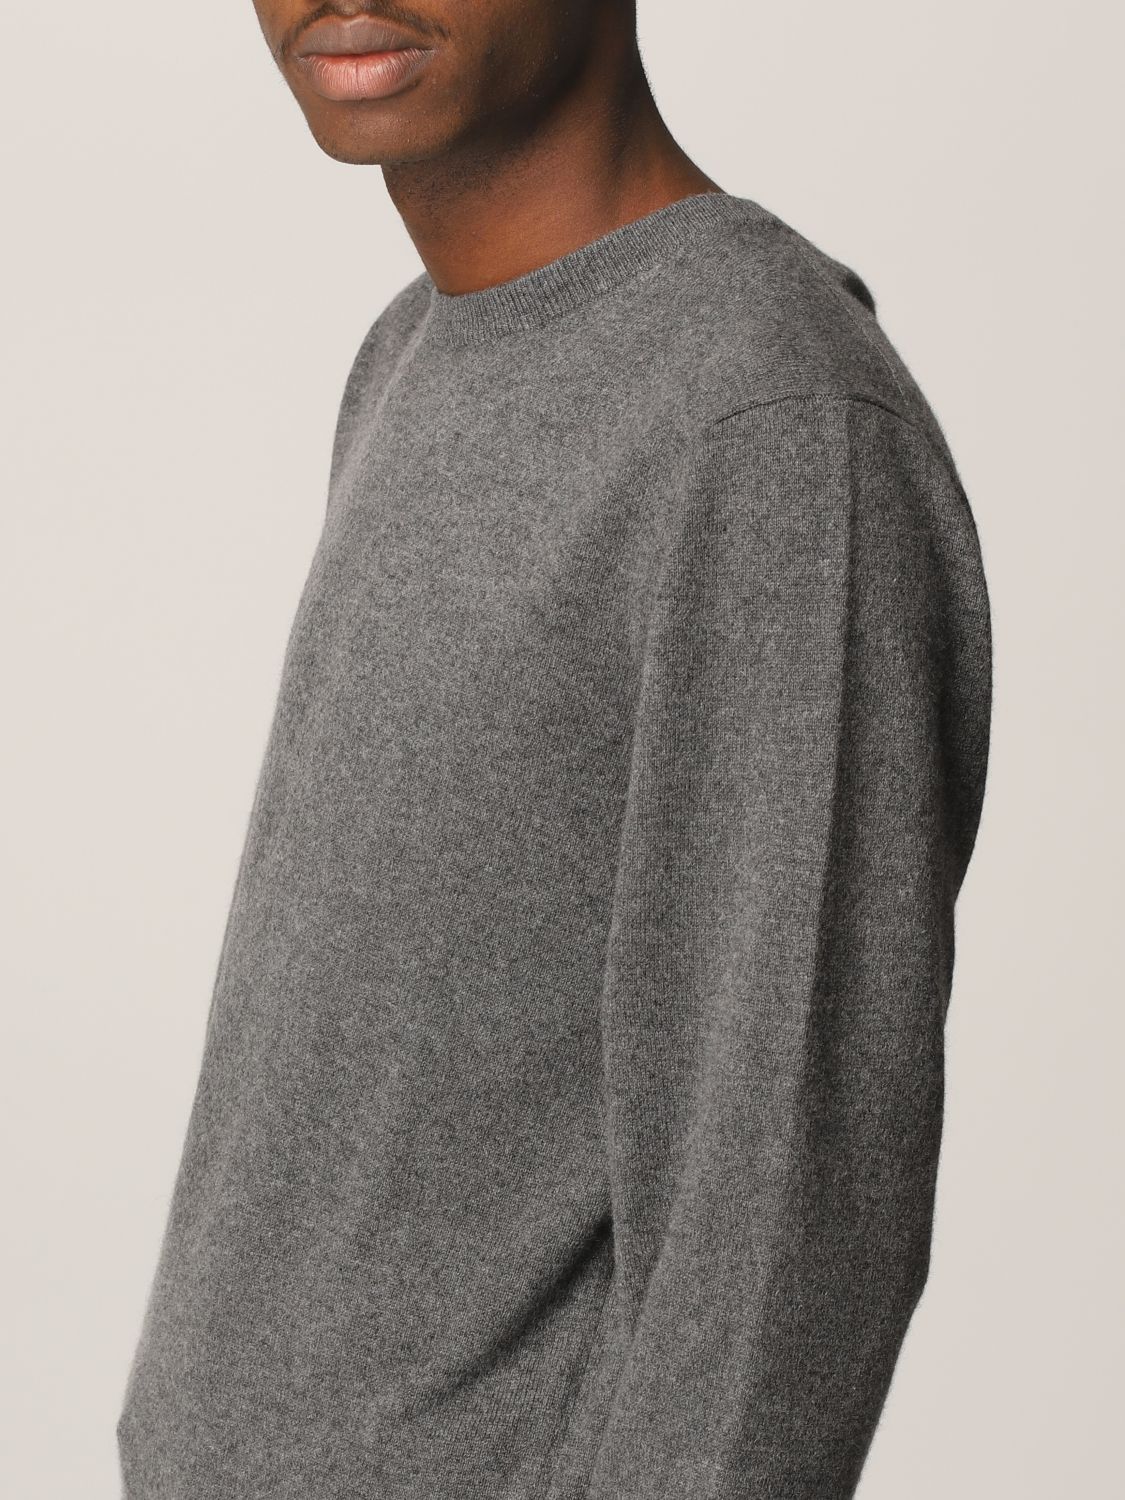 Sweater Aspesi: Sweatshirt men Aspesi grey 3